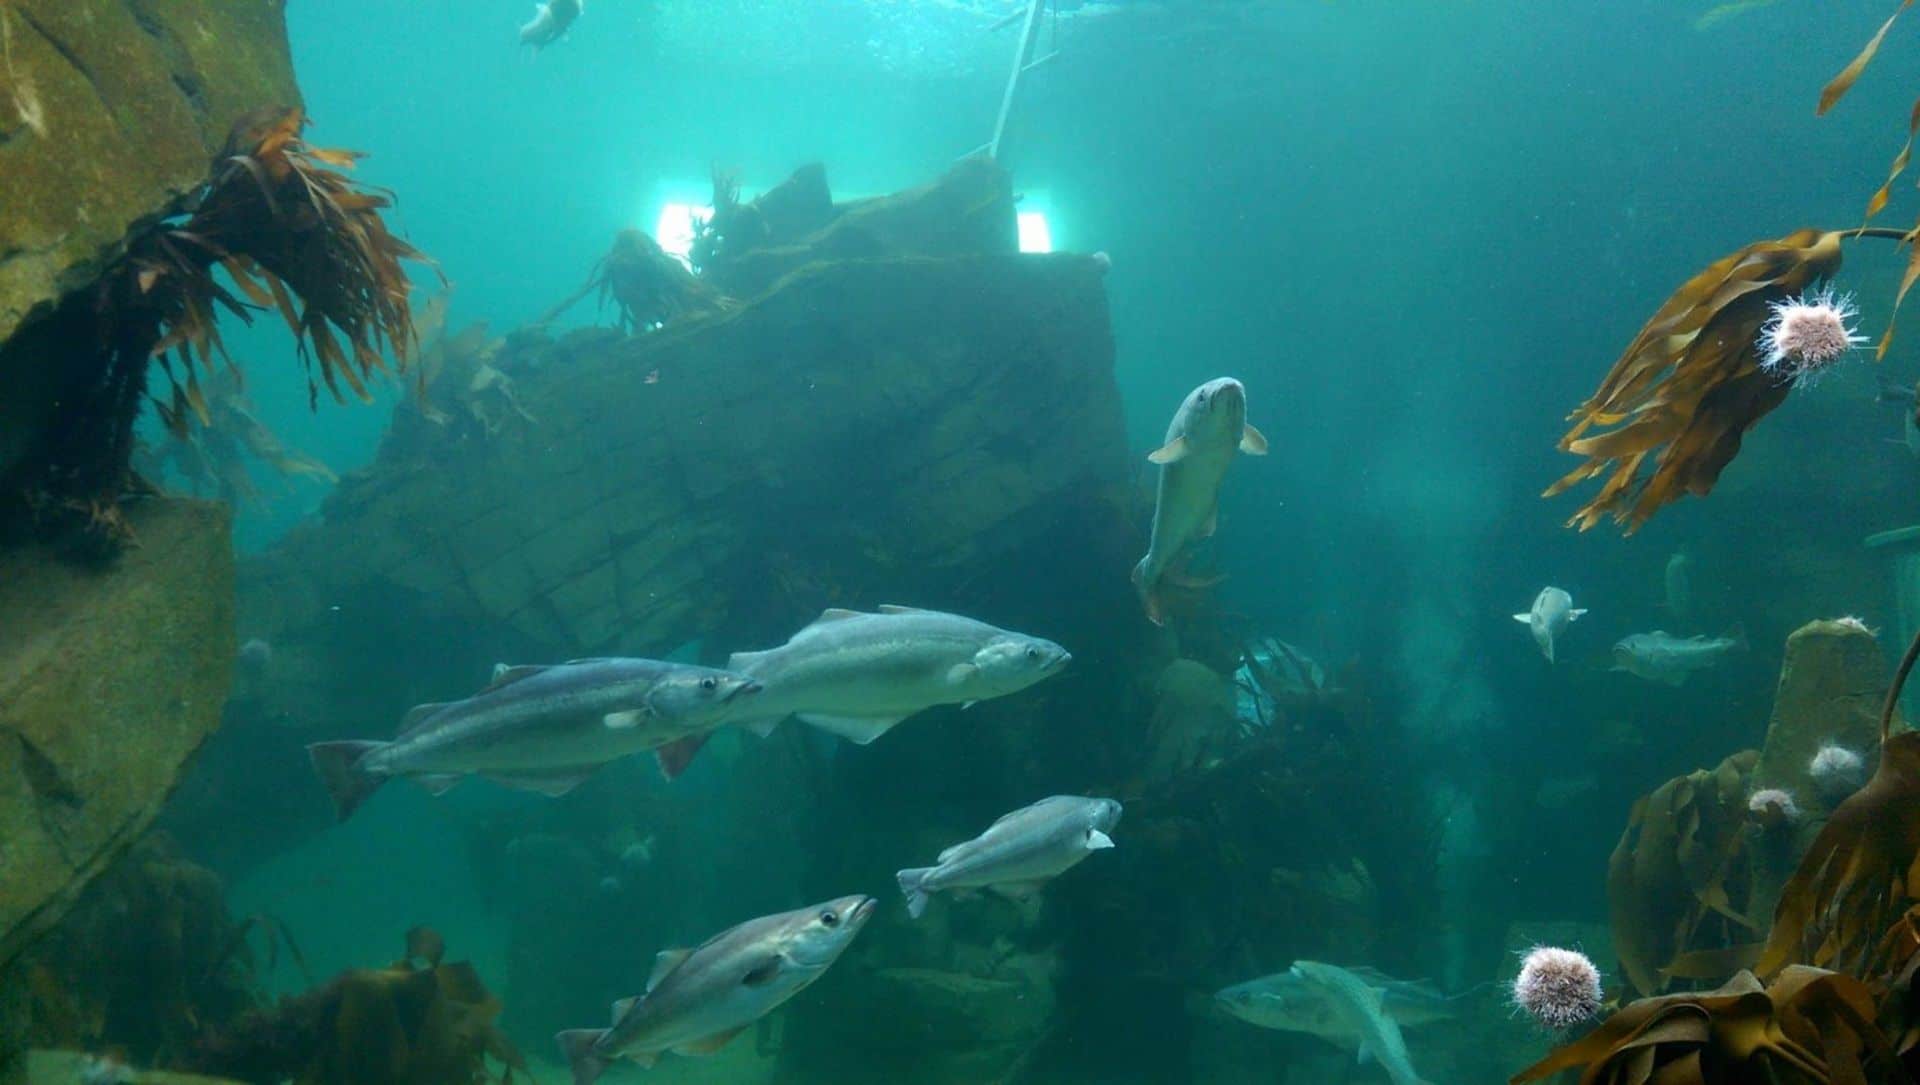 Macduff Marine Aquarium in UK